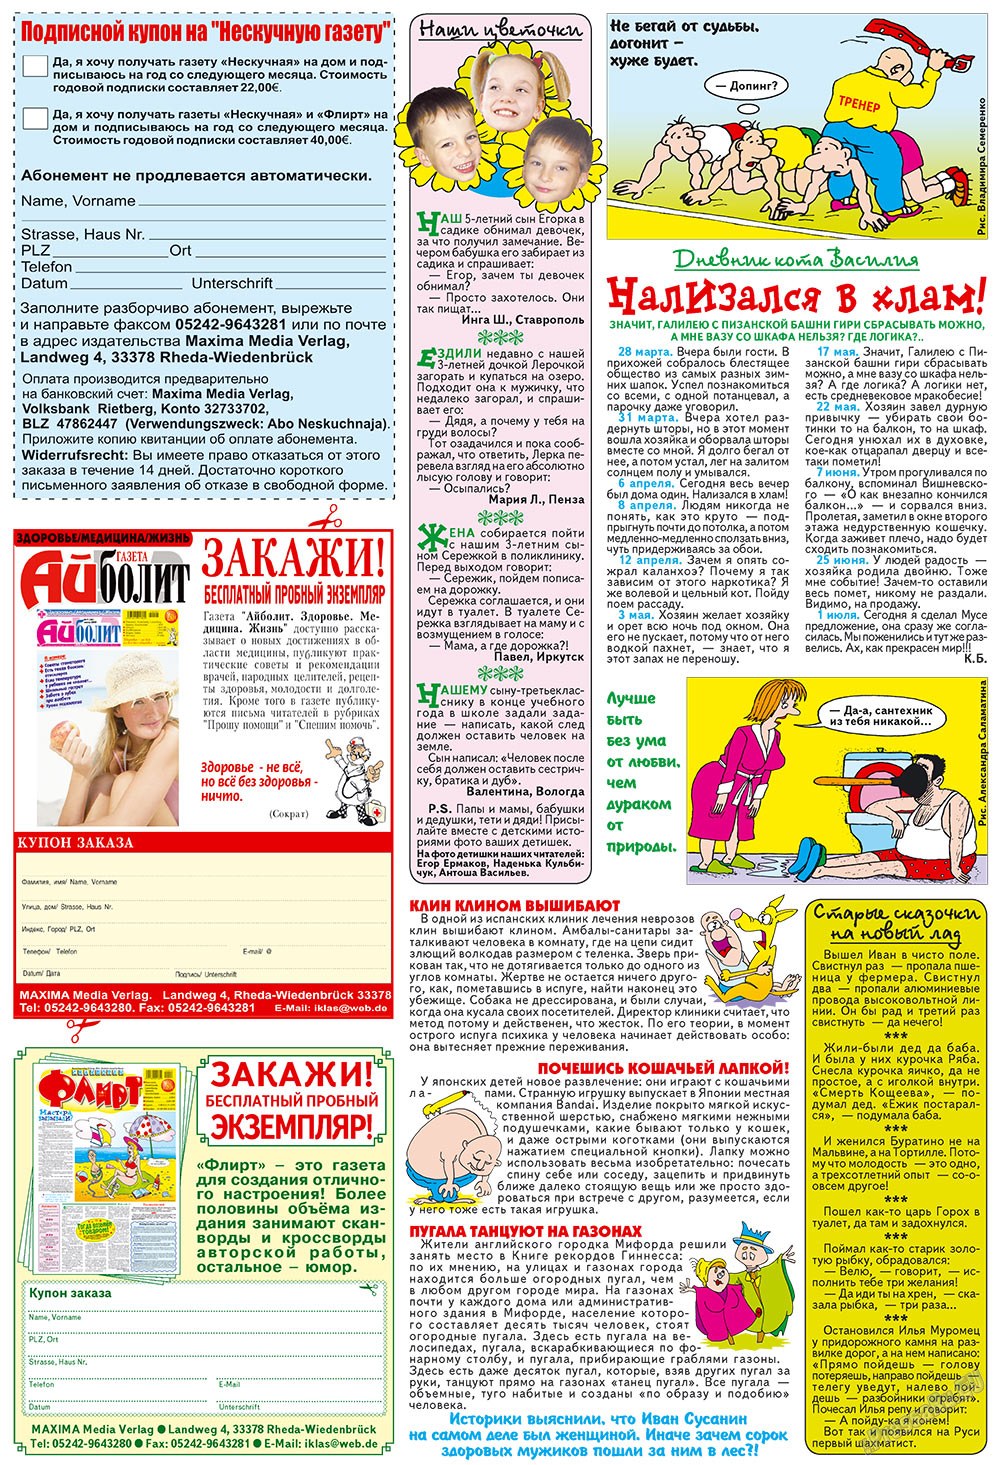 Нескучная газета (журнал). 2009 год, номер 8, стр. 24